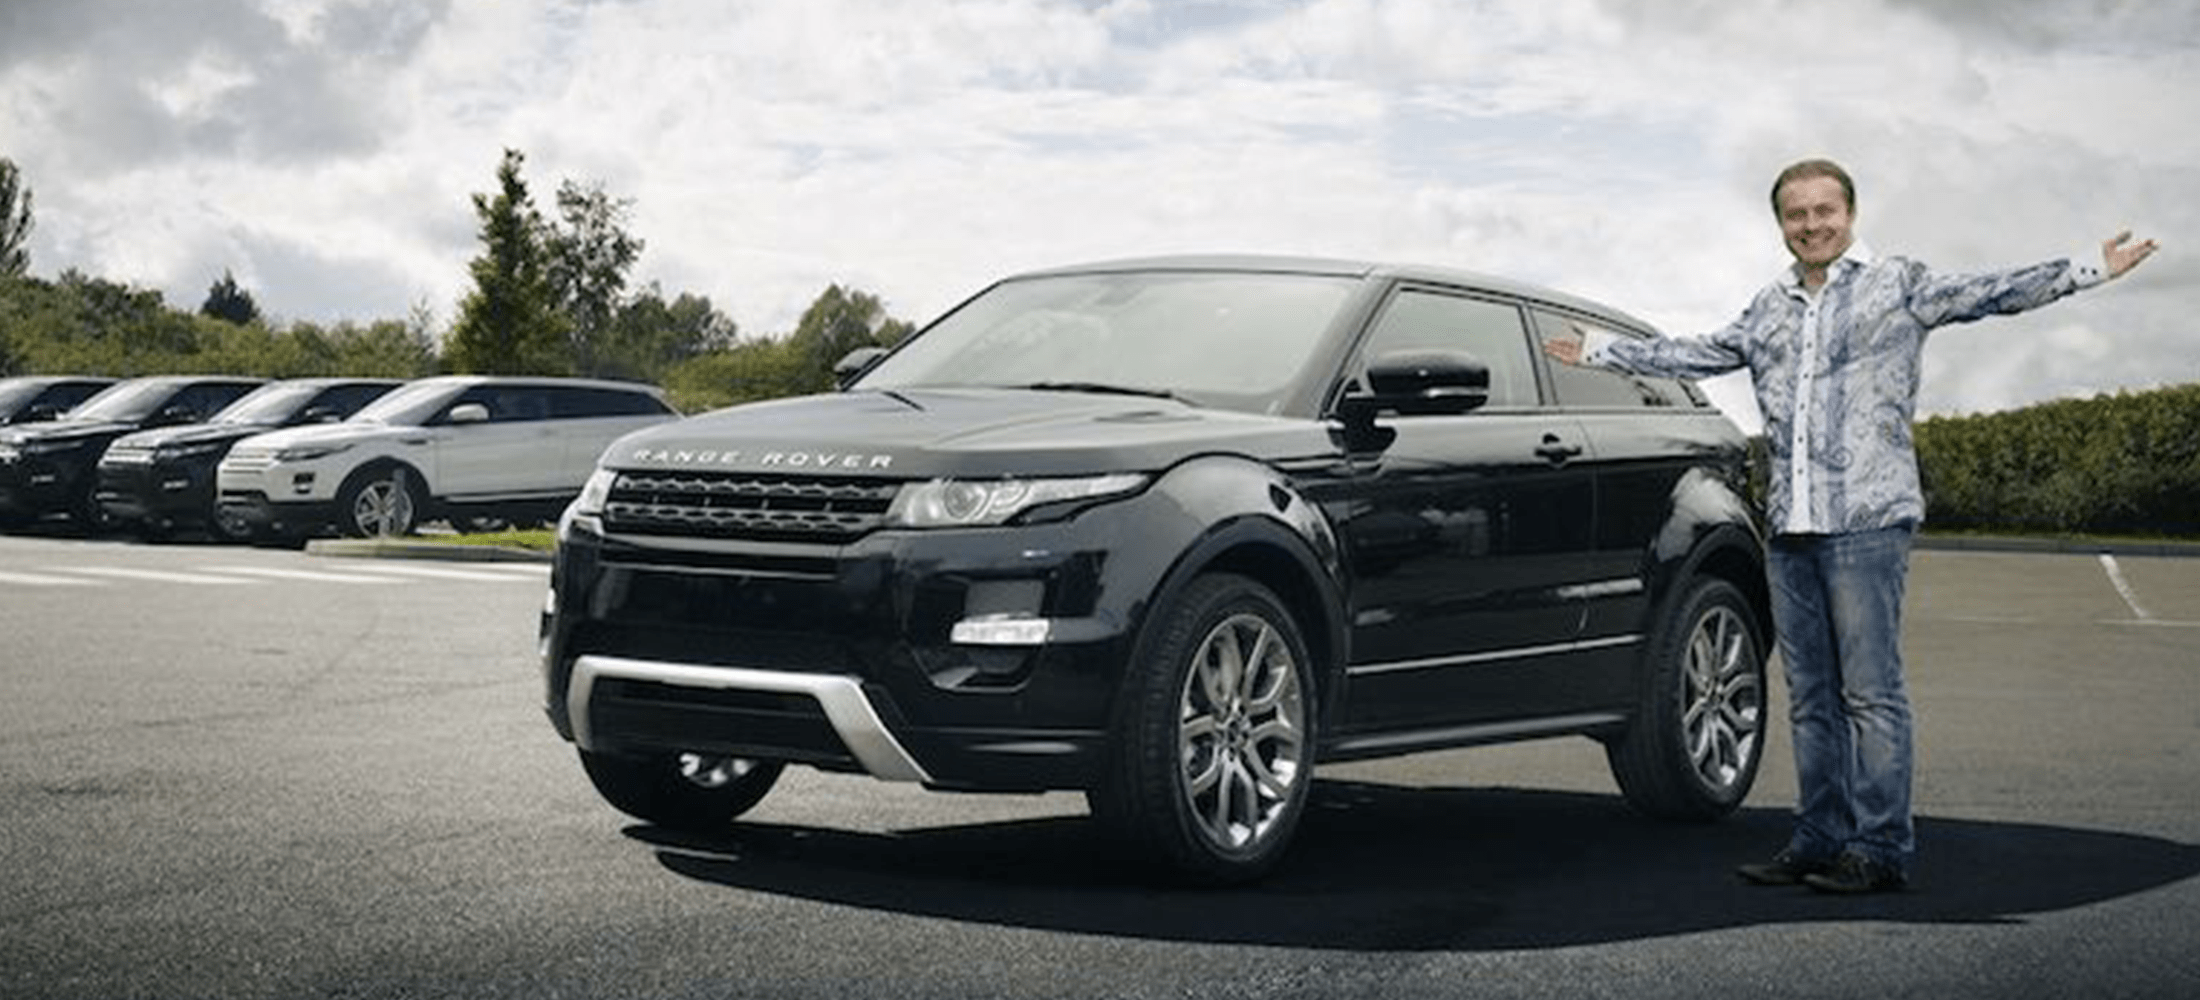 Leasingrückläufer Range Rover